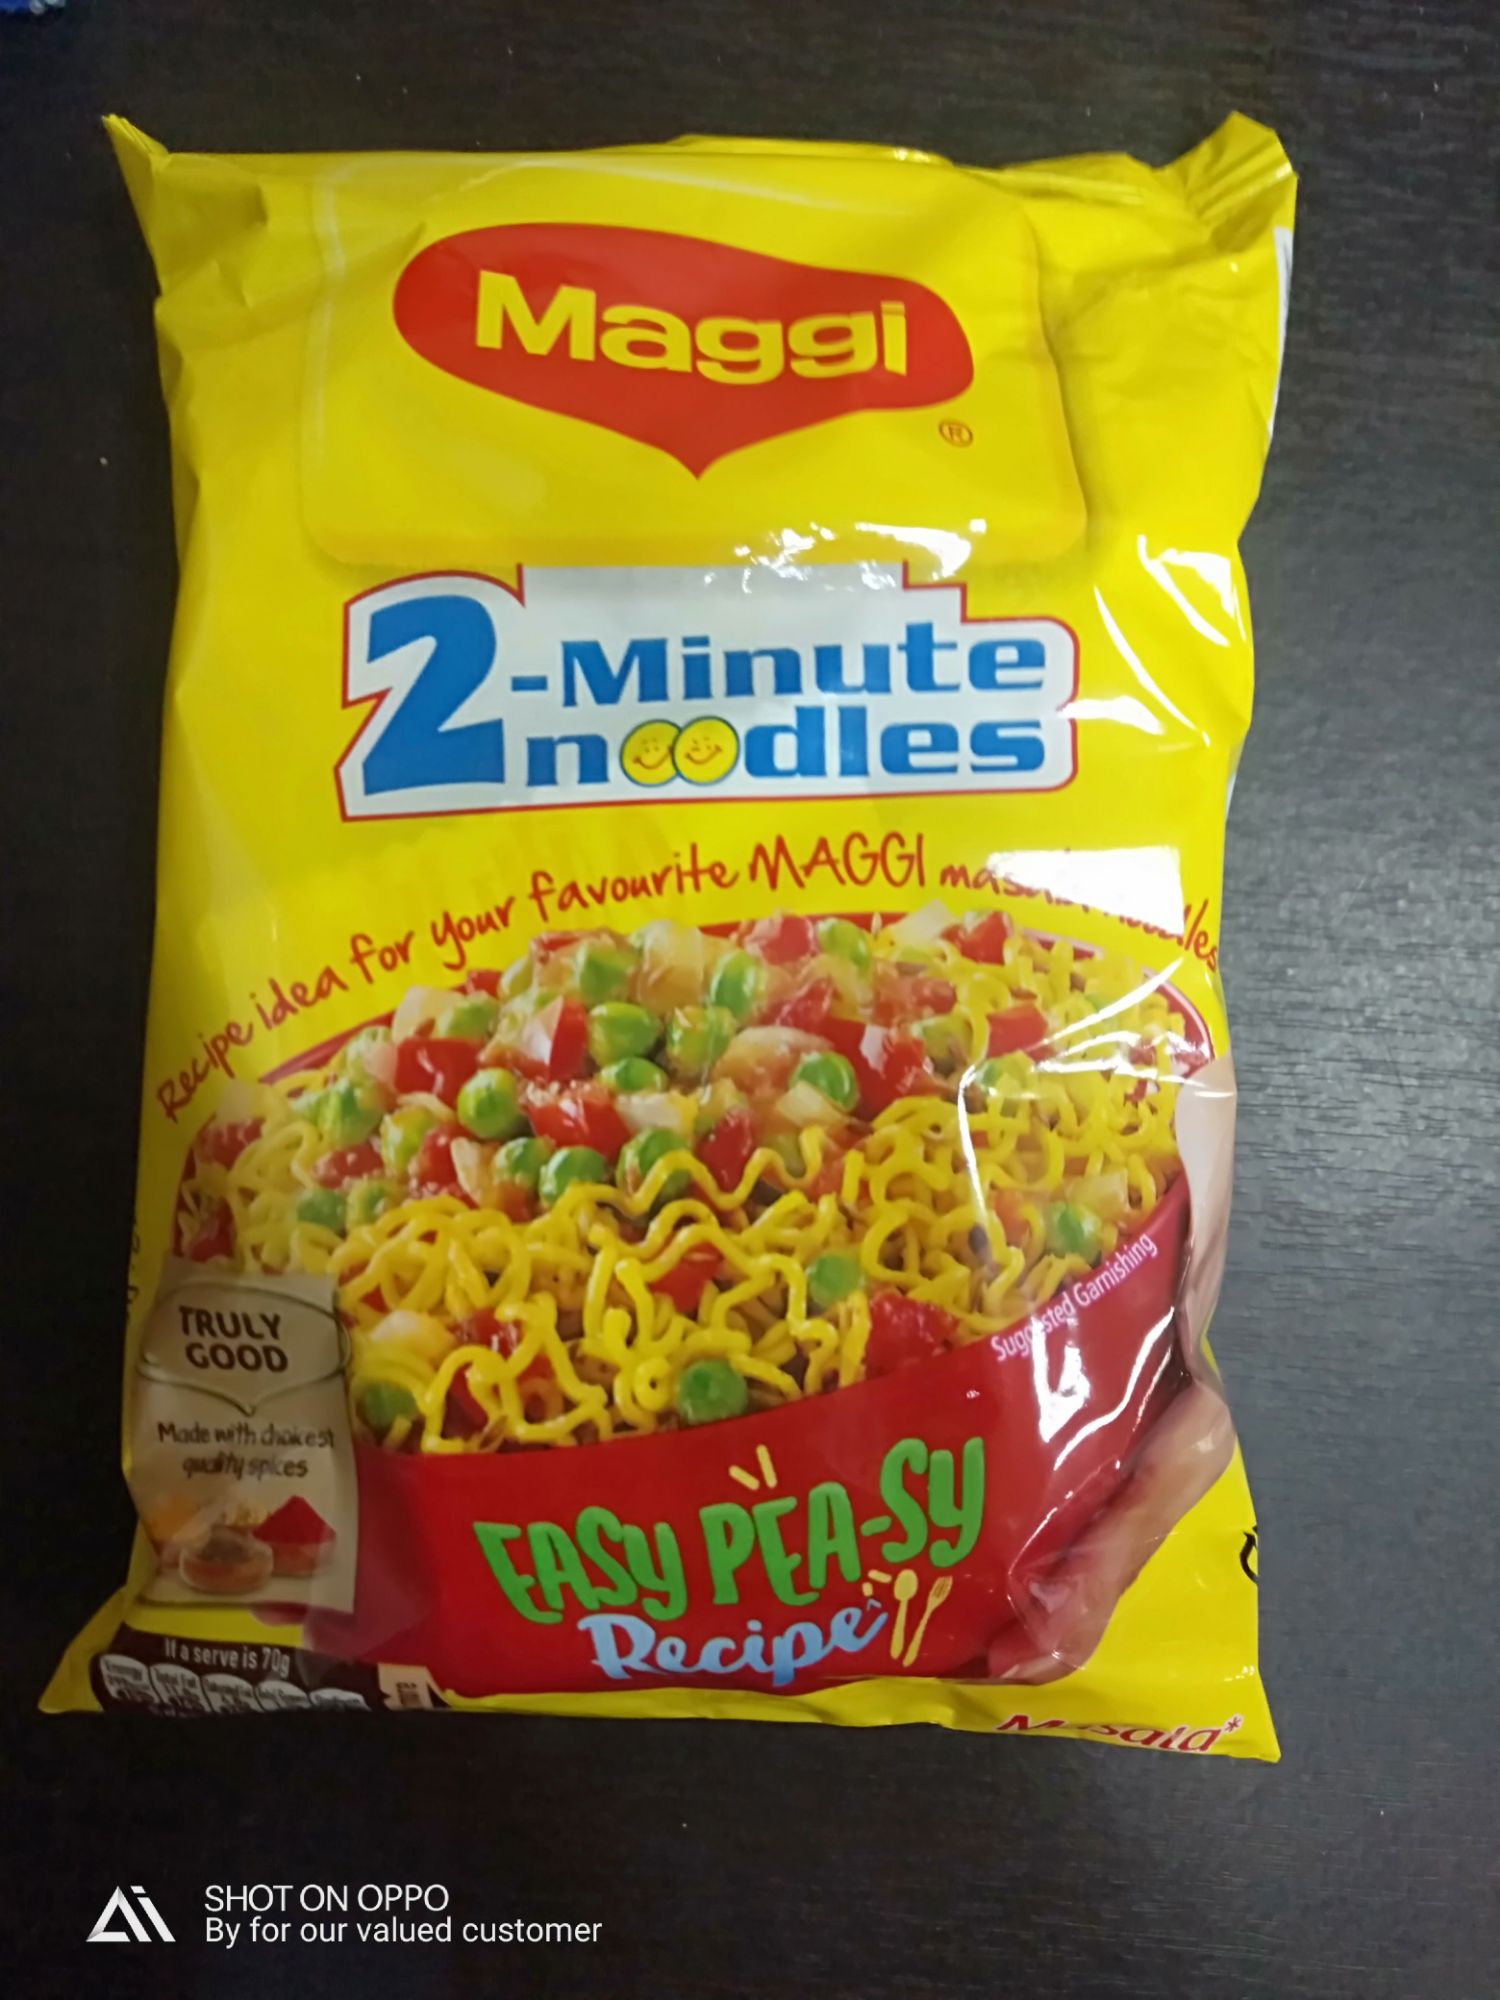 Maggie noodles